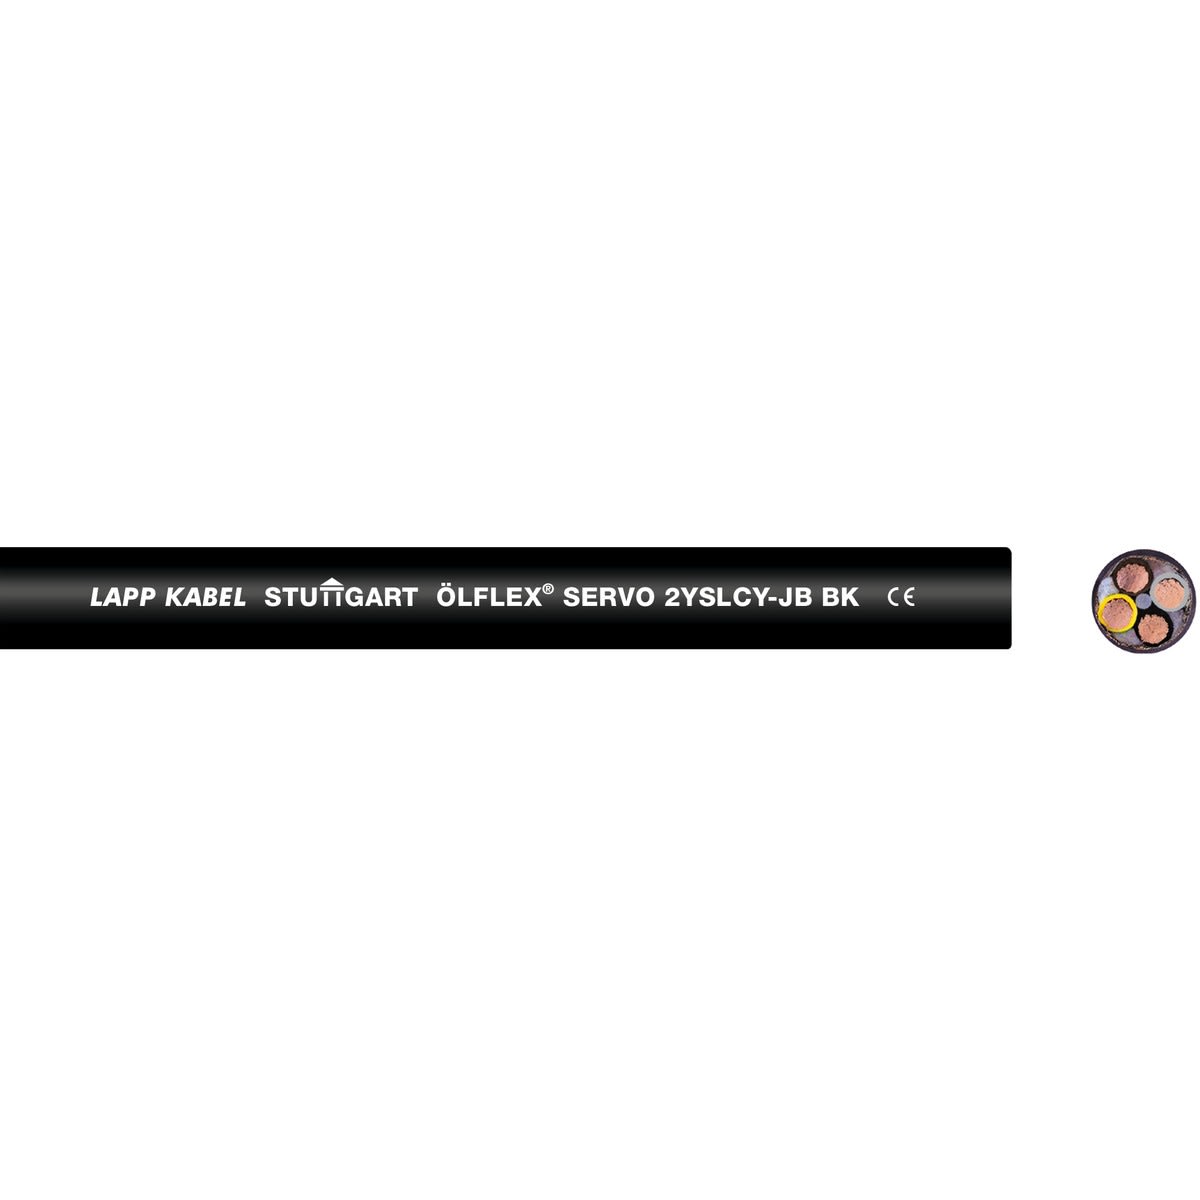 Lapp - ÖLFLEX SERVO 2YSLCY-JB BK 4G2,5